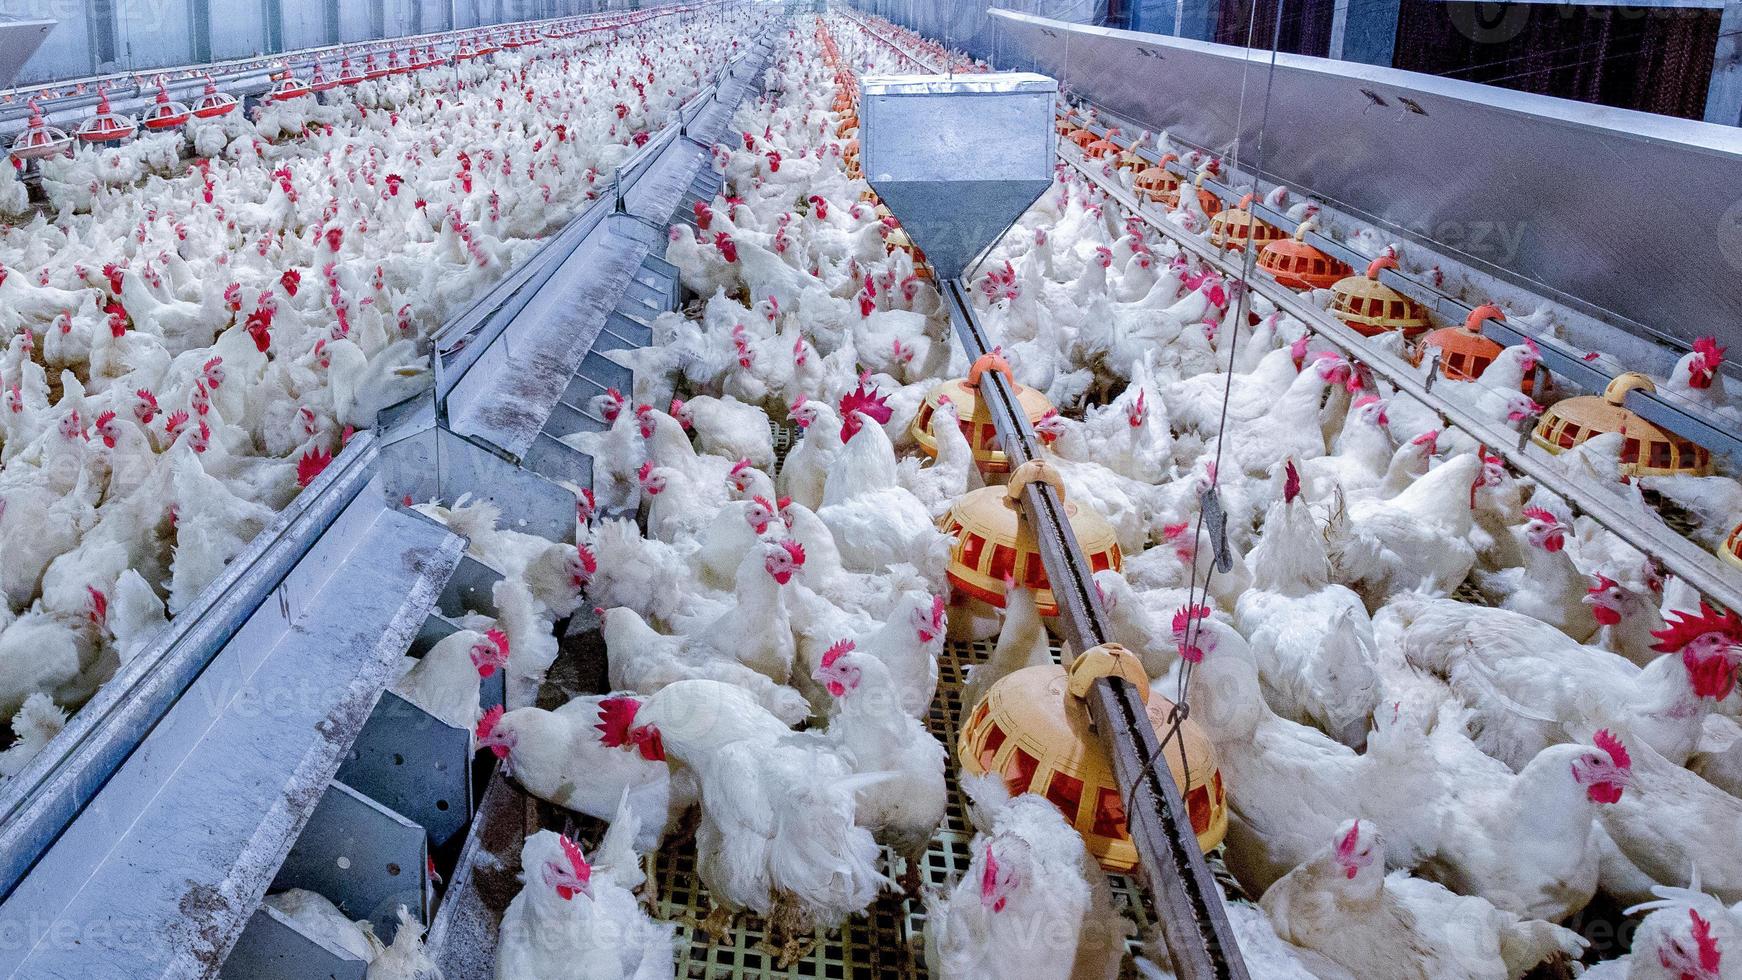 Geflügelfarm mit Hühnchen. Tierhaltung, Wohnungswirtschaft zum Zwecke der Fleischwirtschaft, Weißhühnerfutter in Innenhaltung. lebendes Huhn für die Fleisch- und Eierproduktion in einem Lager. foto